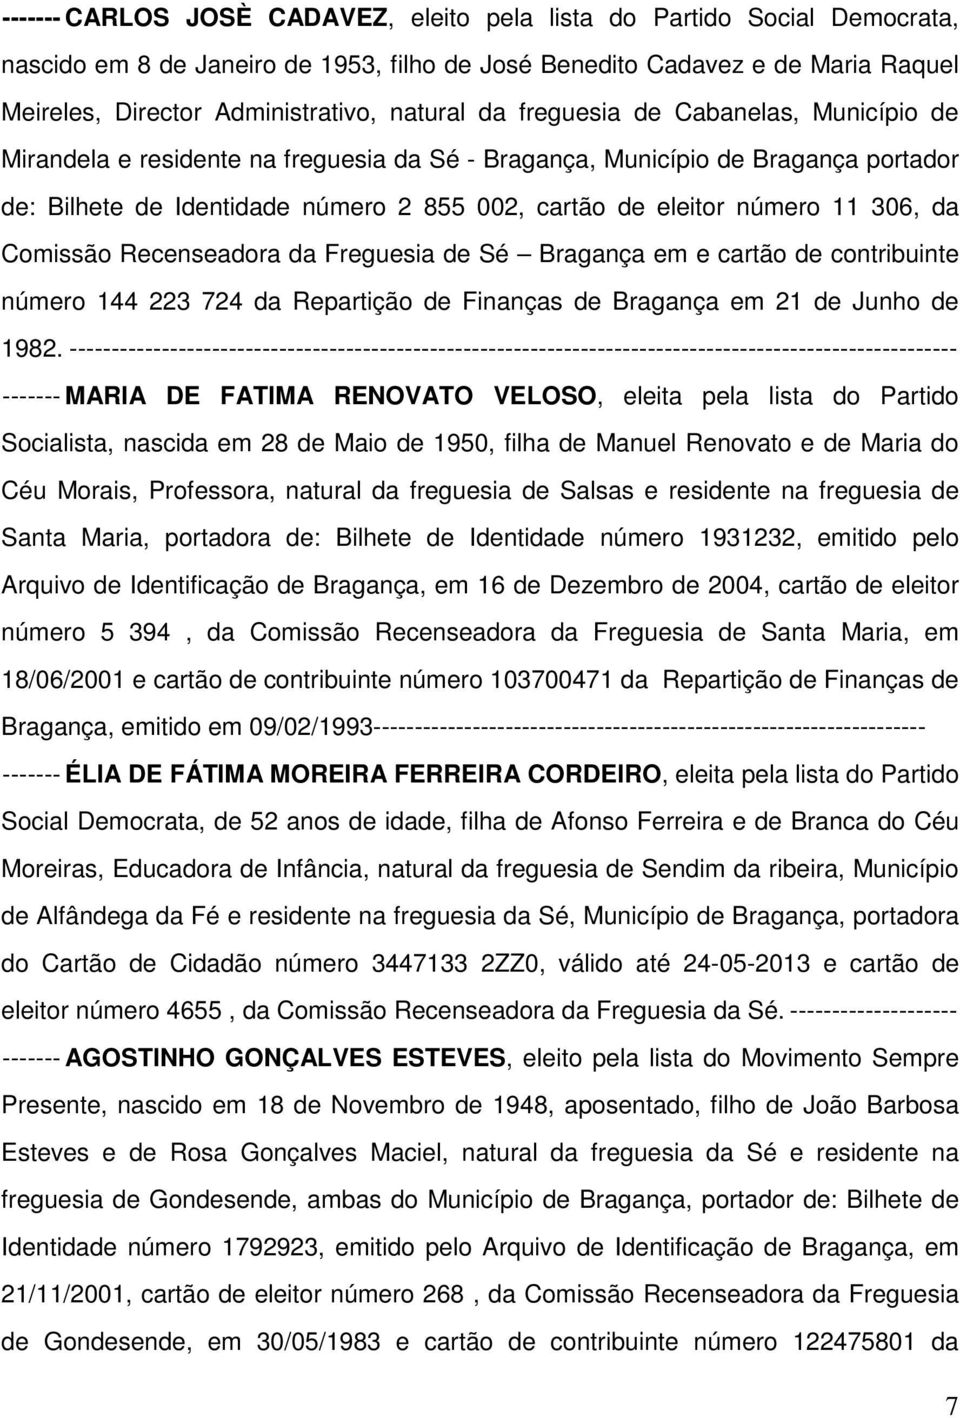 número 11 306, da Comissão Recenseadora da Freguesia de Sé Bragança em e cartão de contribuinte número 144 223 724 da Repartição de Finanças de Bragança em 21 de Junho de 1982.